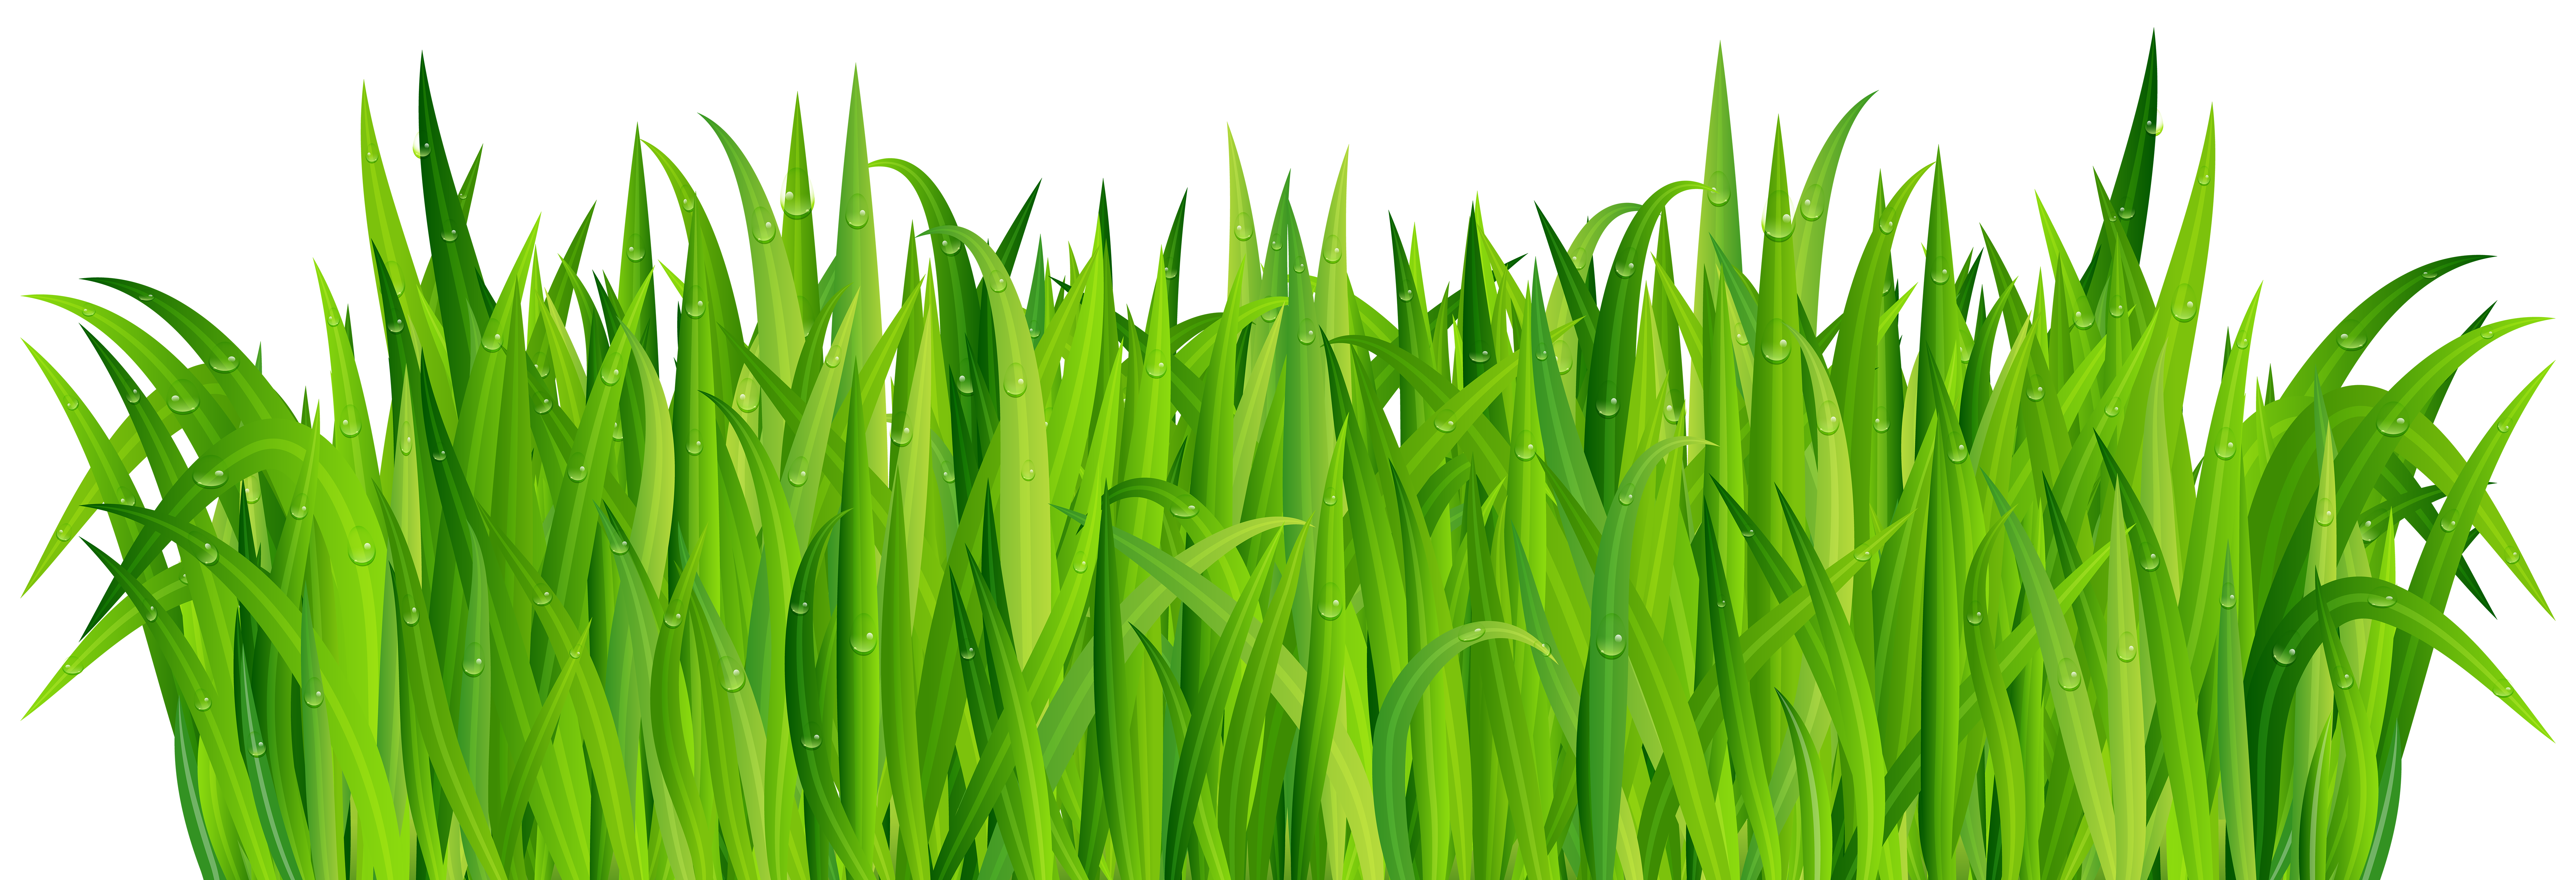 green grass clipart png